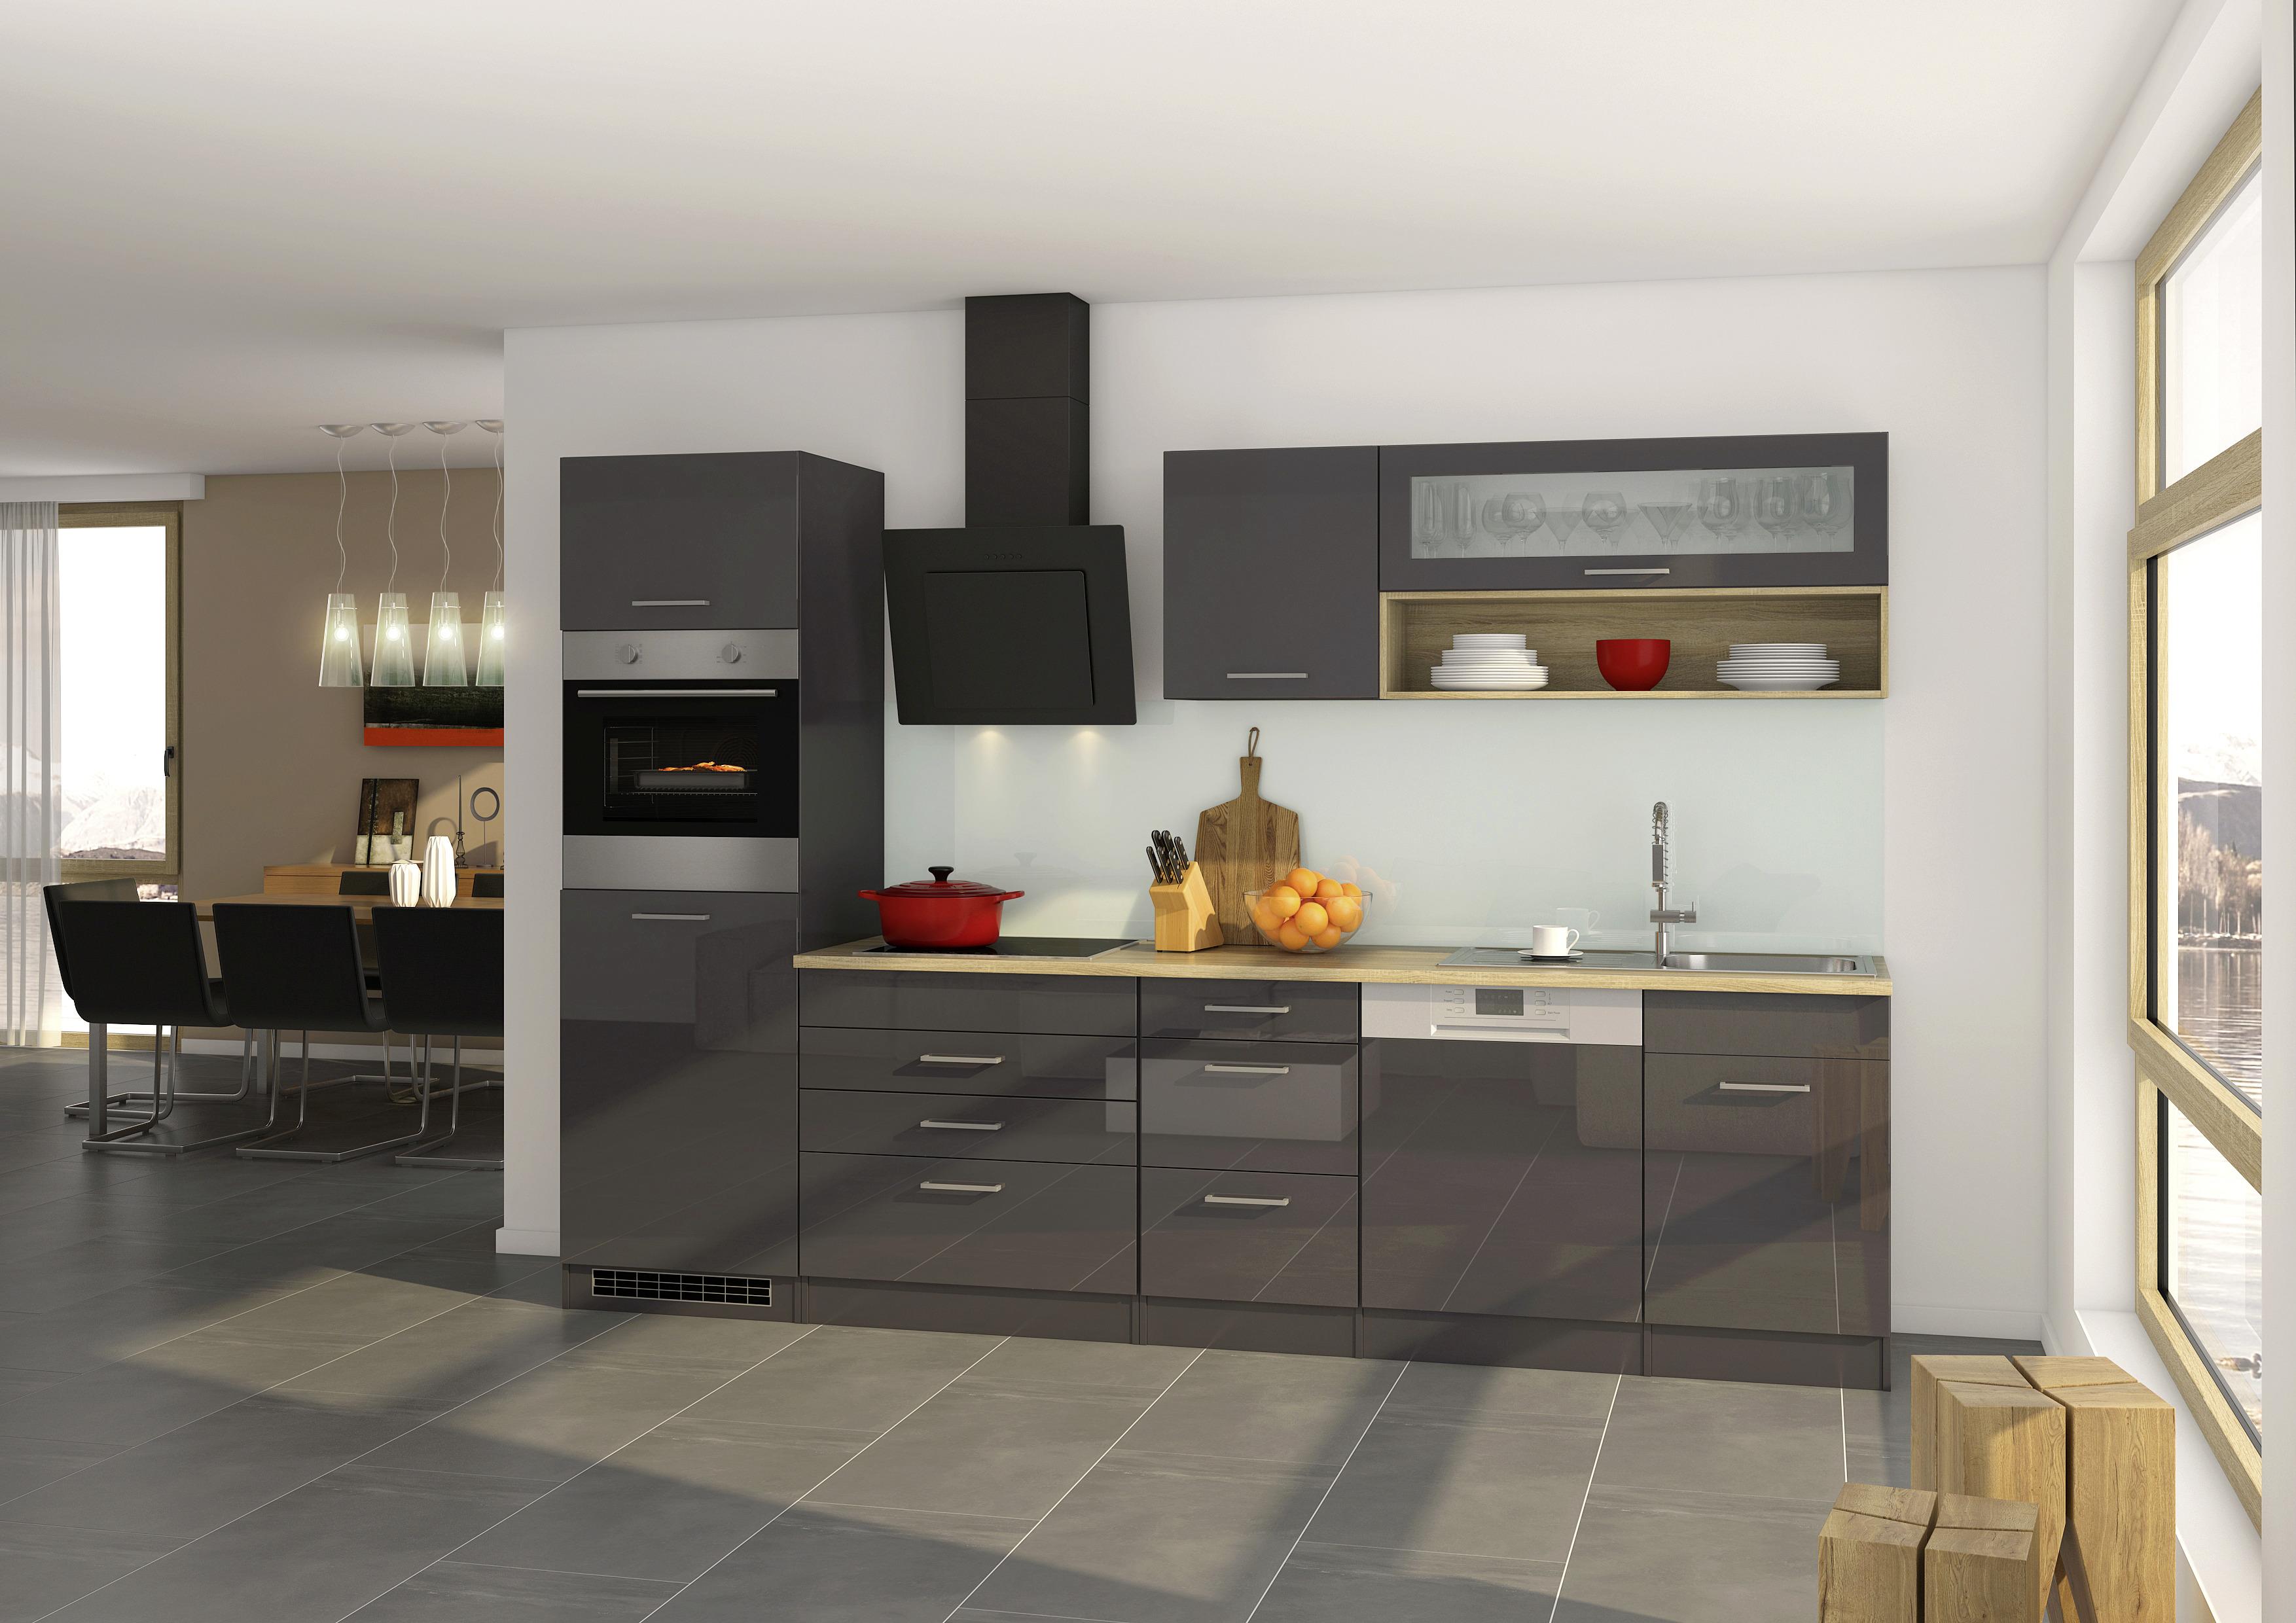 Küchenzeile Mailand mit Geräten 300 cm Anthrazit Hochglanz - Eichefarben/Anthrazit, MODERN, Holzwerkstoff (300cm) - MID.YOU